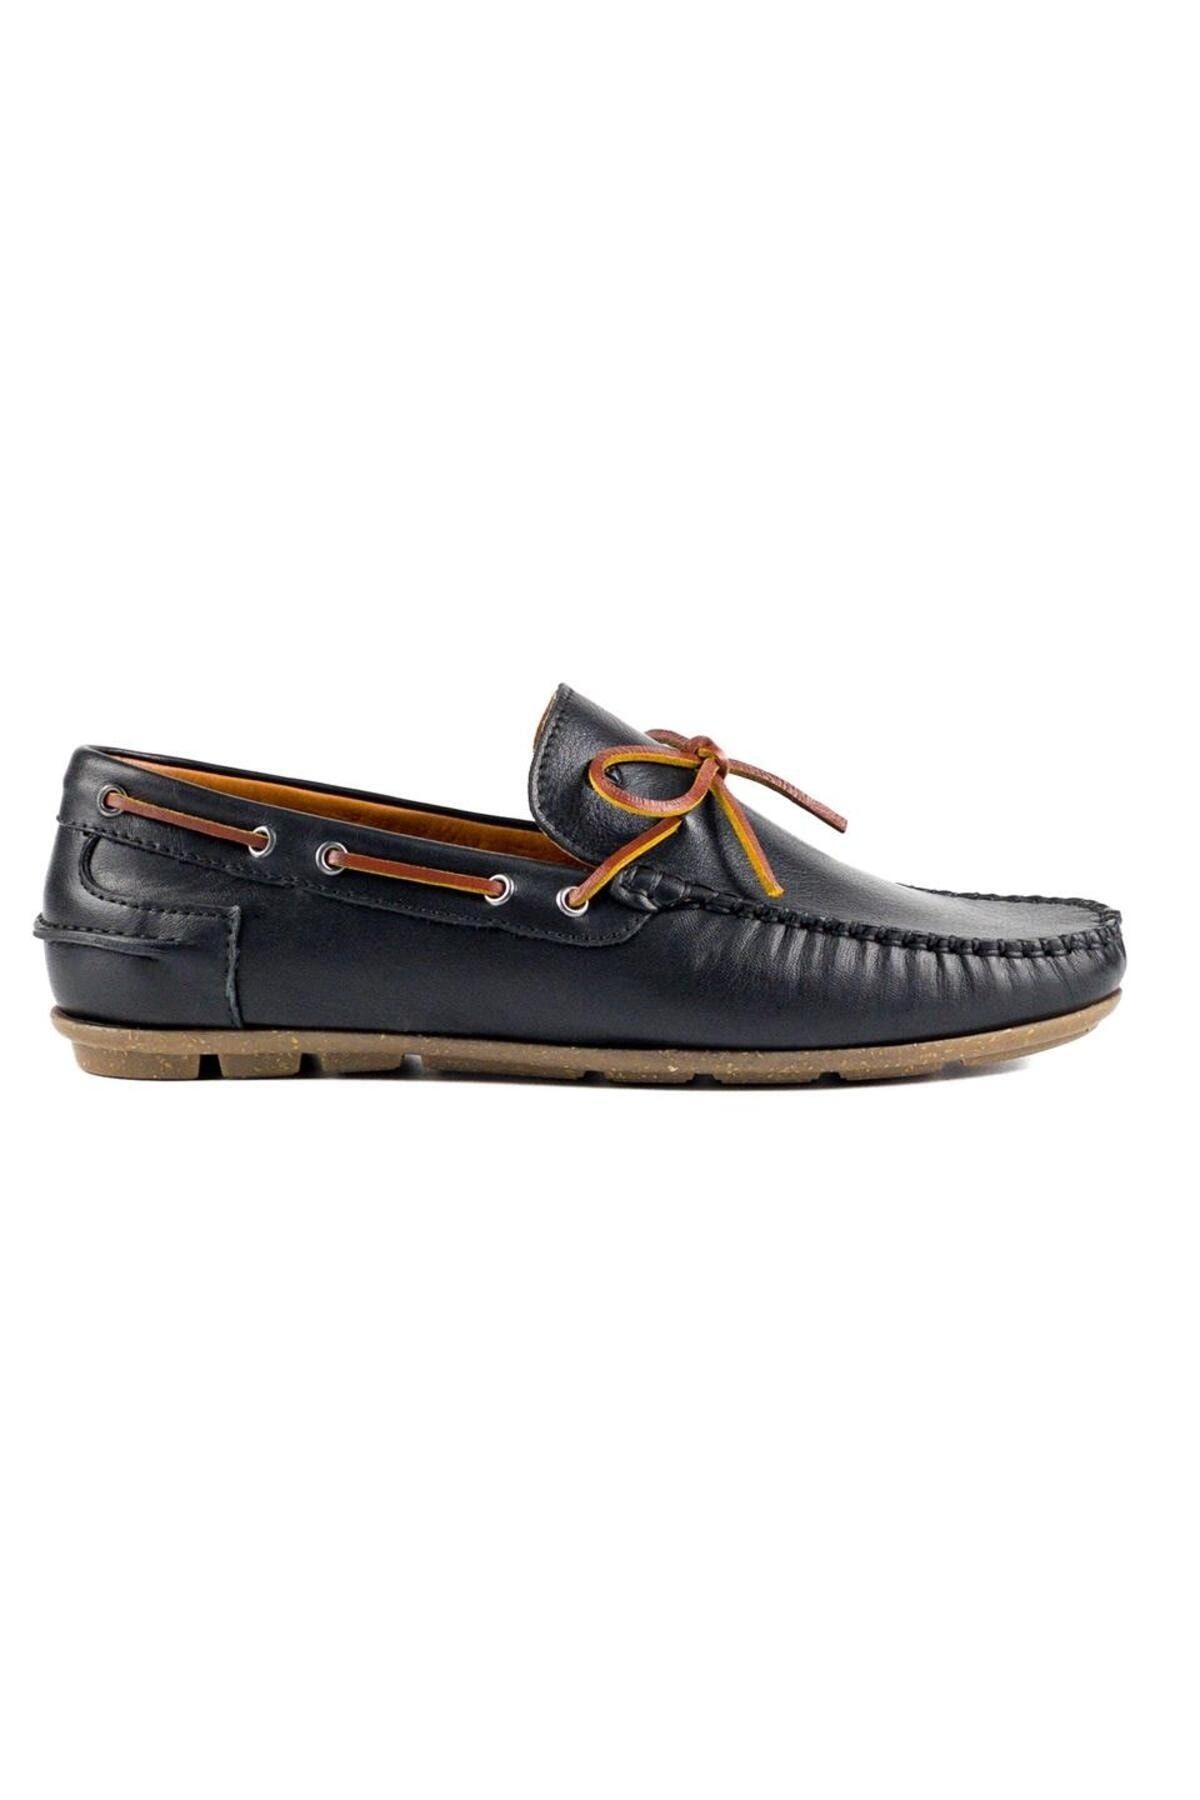 TEZCAN KUNDURA Alabanda Hakiki Deri Loafer Krep Taban Bağcıklı Siyah Günlük Erkek Ayakkabı